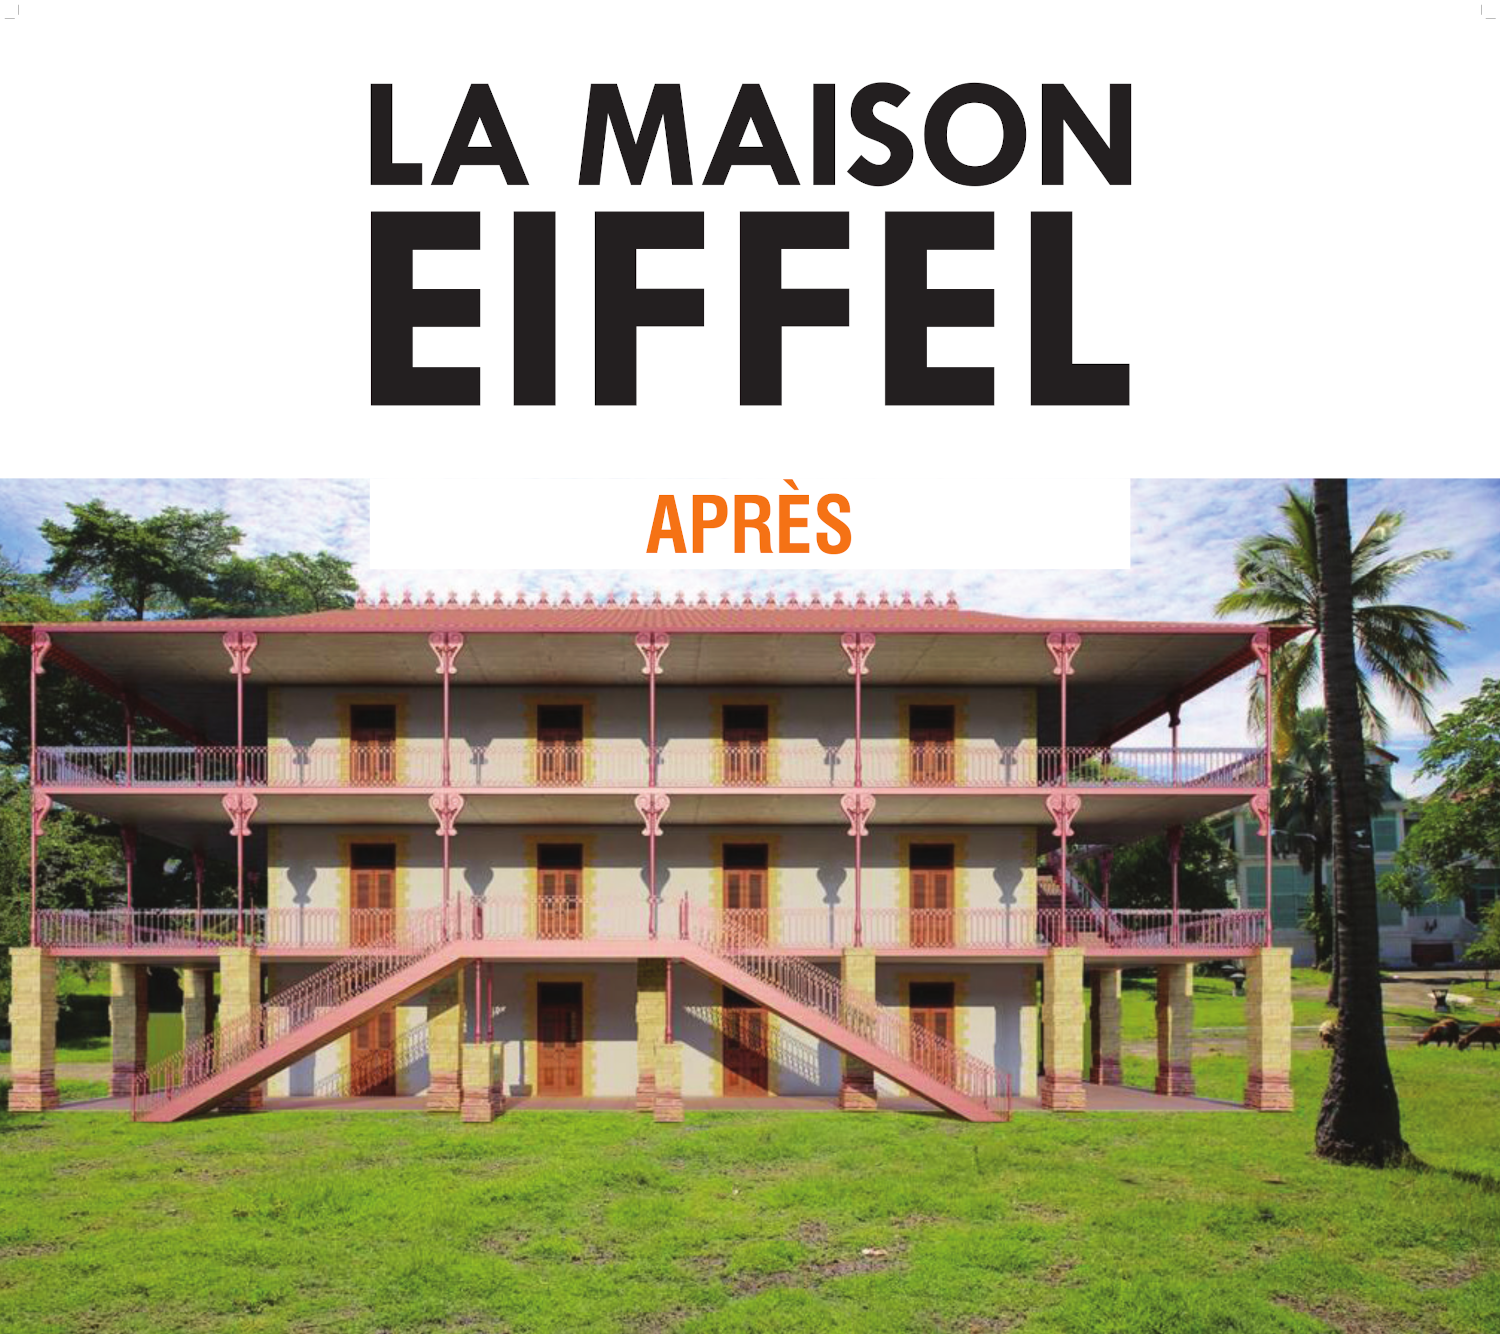 Projet de réhabilitation d'une Maison Eiffel à Madagascar par l'architecte Jean Paul Lubliner 1